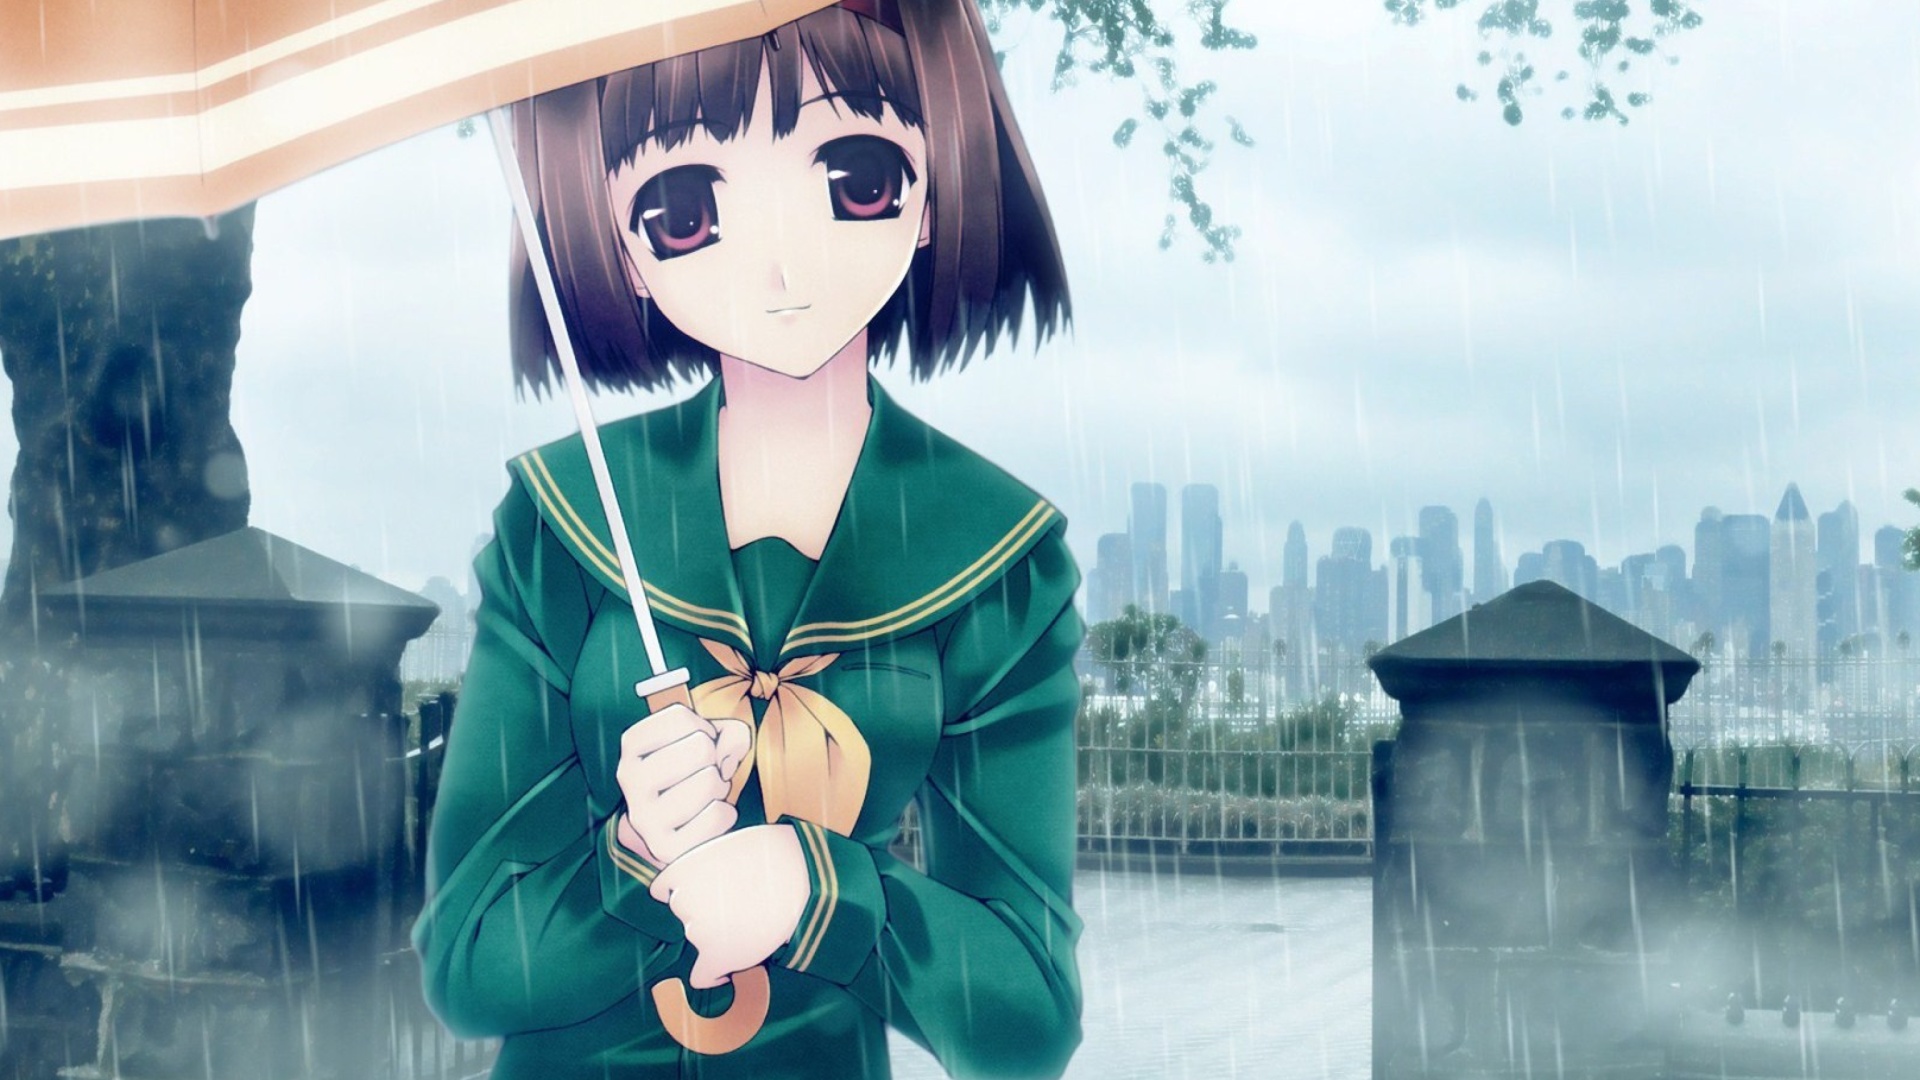 Обои Anime Girl in Rain 1920x1080